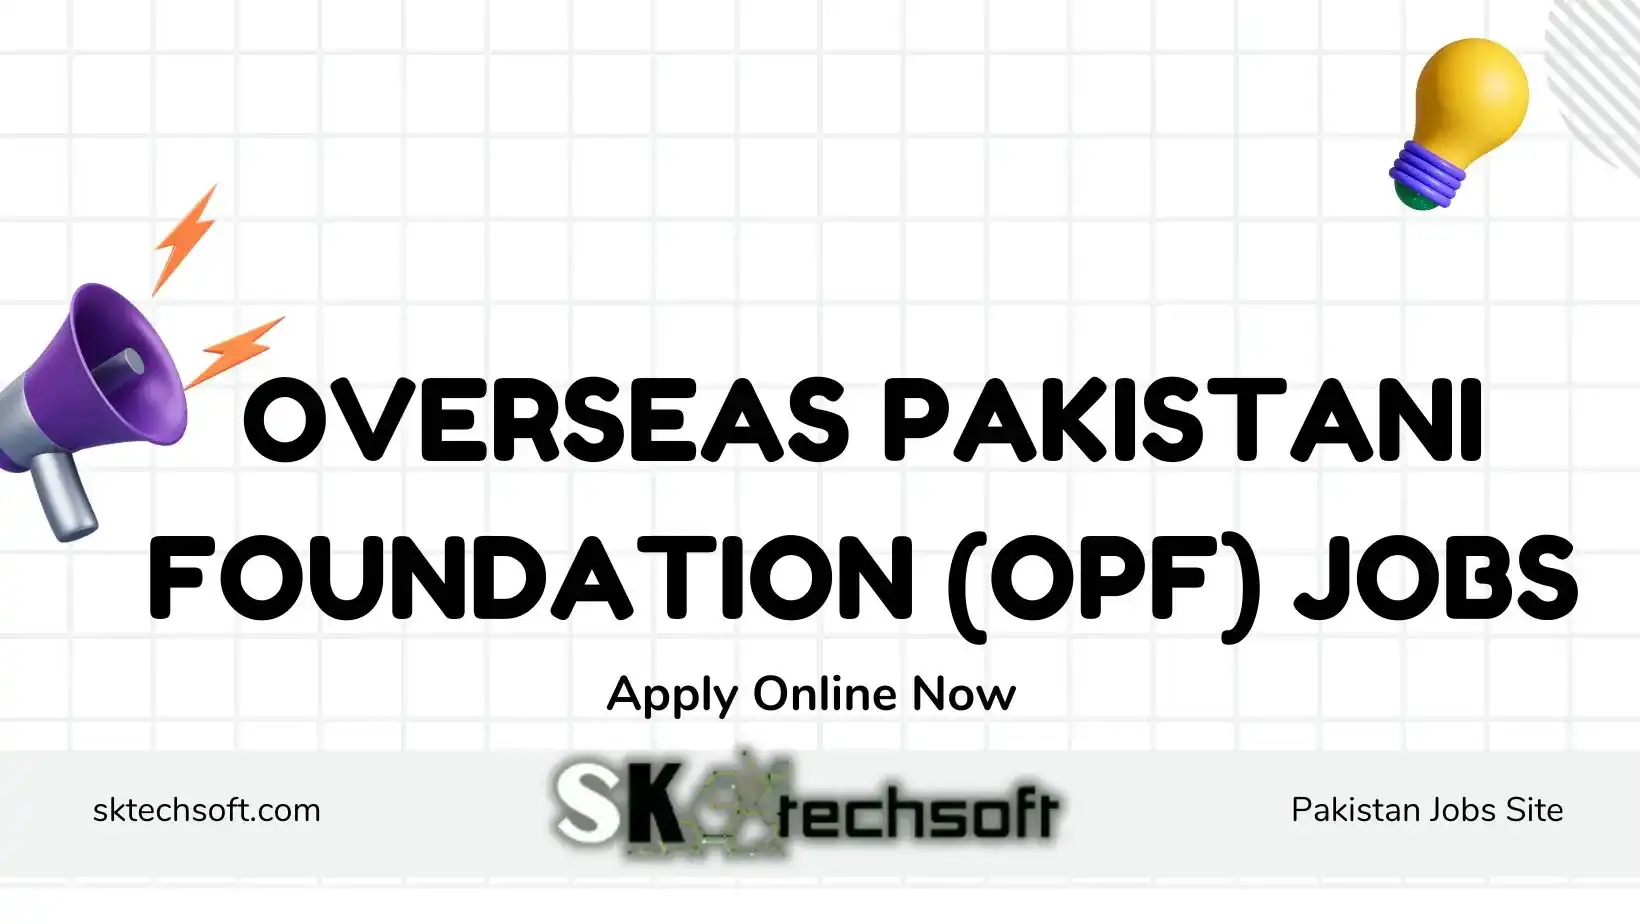 Overseas Pakistani Foundation (OPF) Jobs